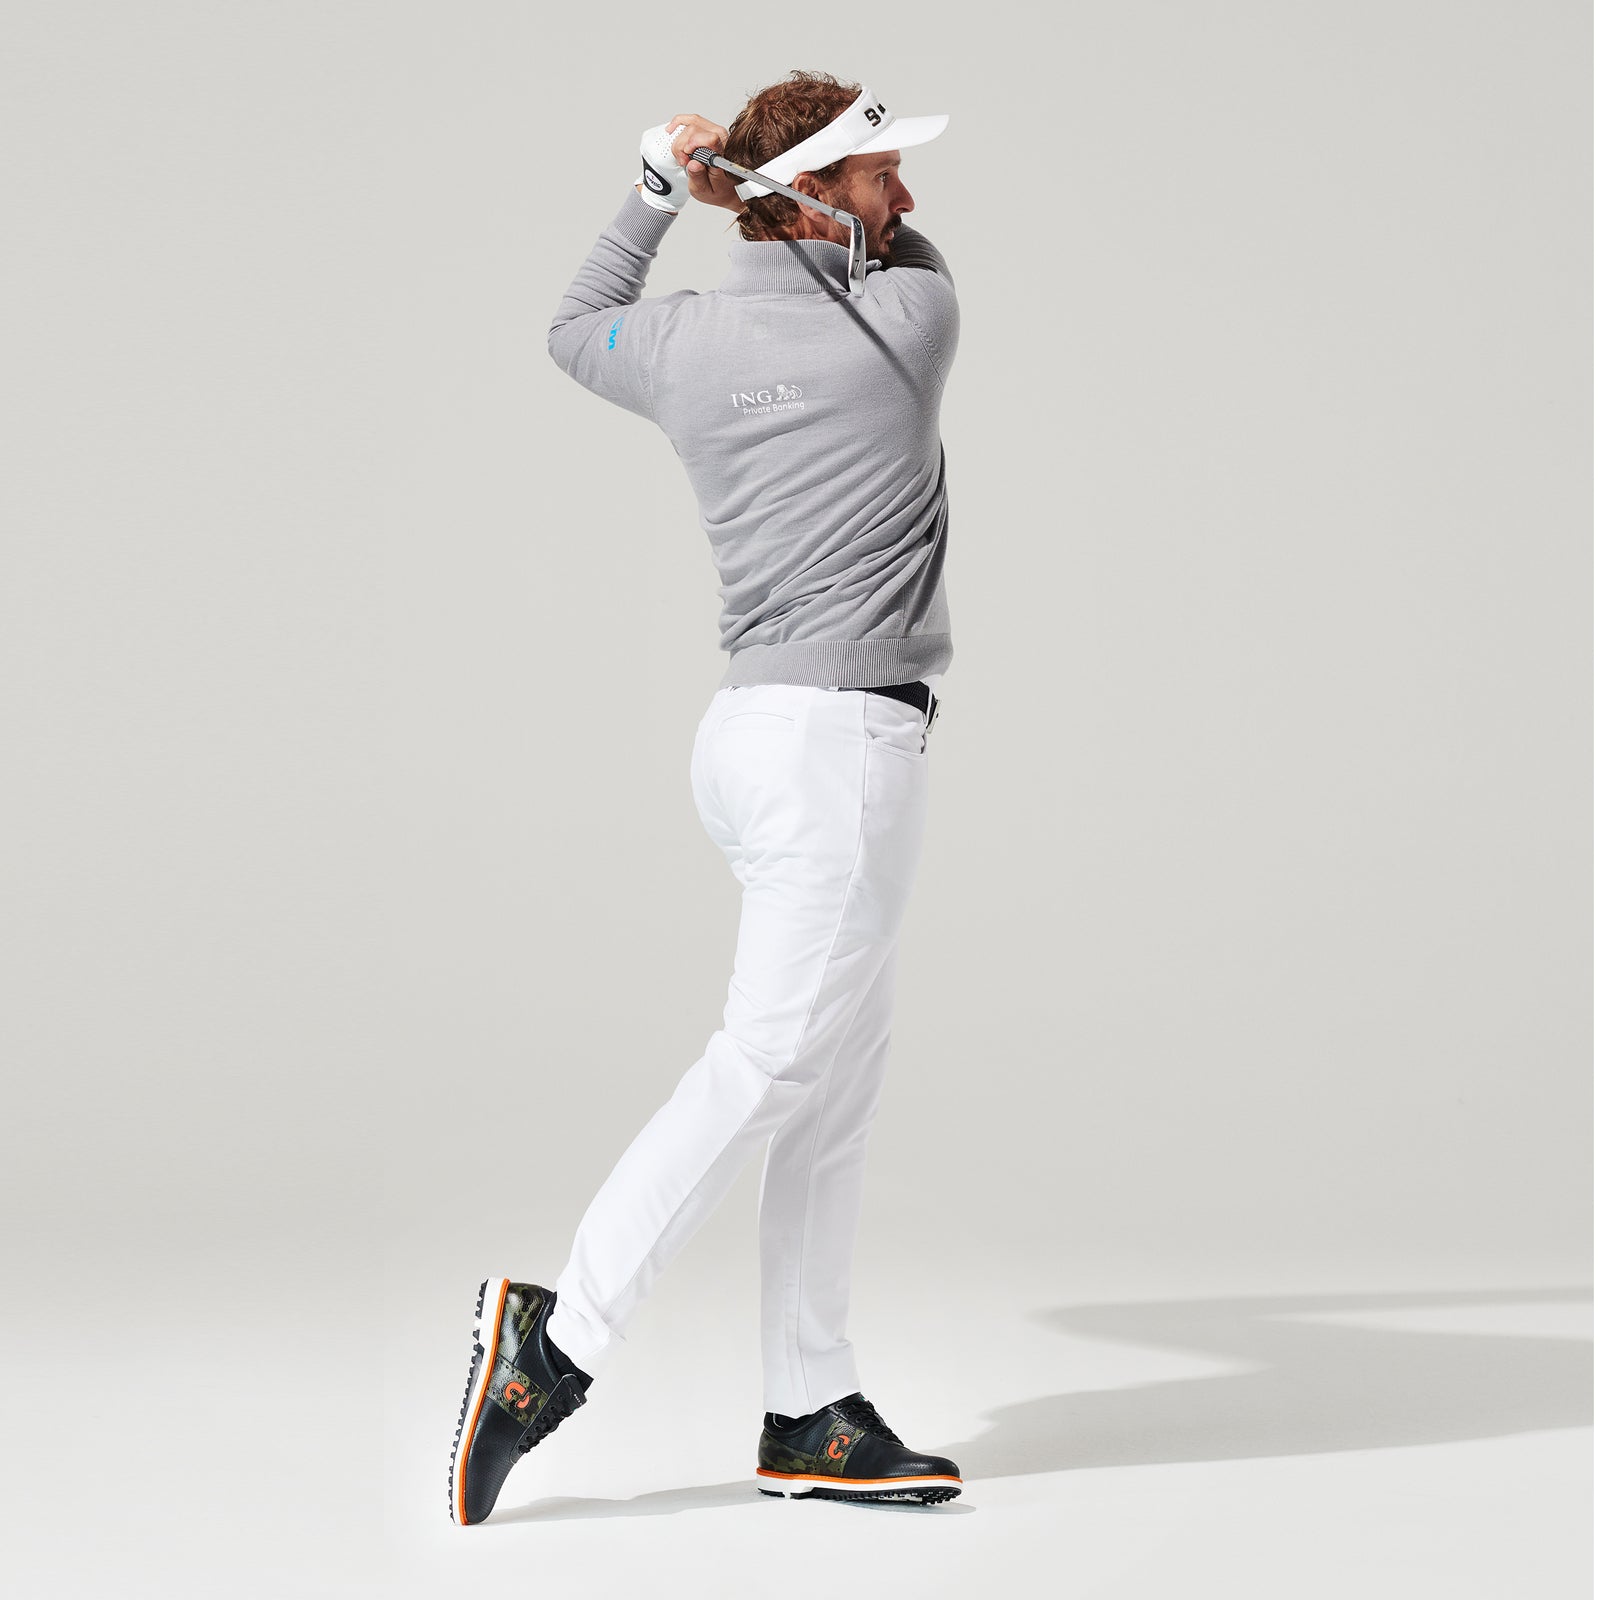 JL2 - Black/Camo | Men's Golf Shoes – Duca del Cosma Golf